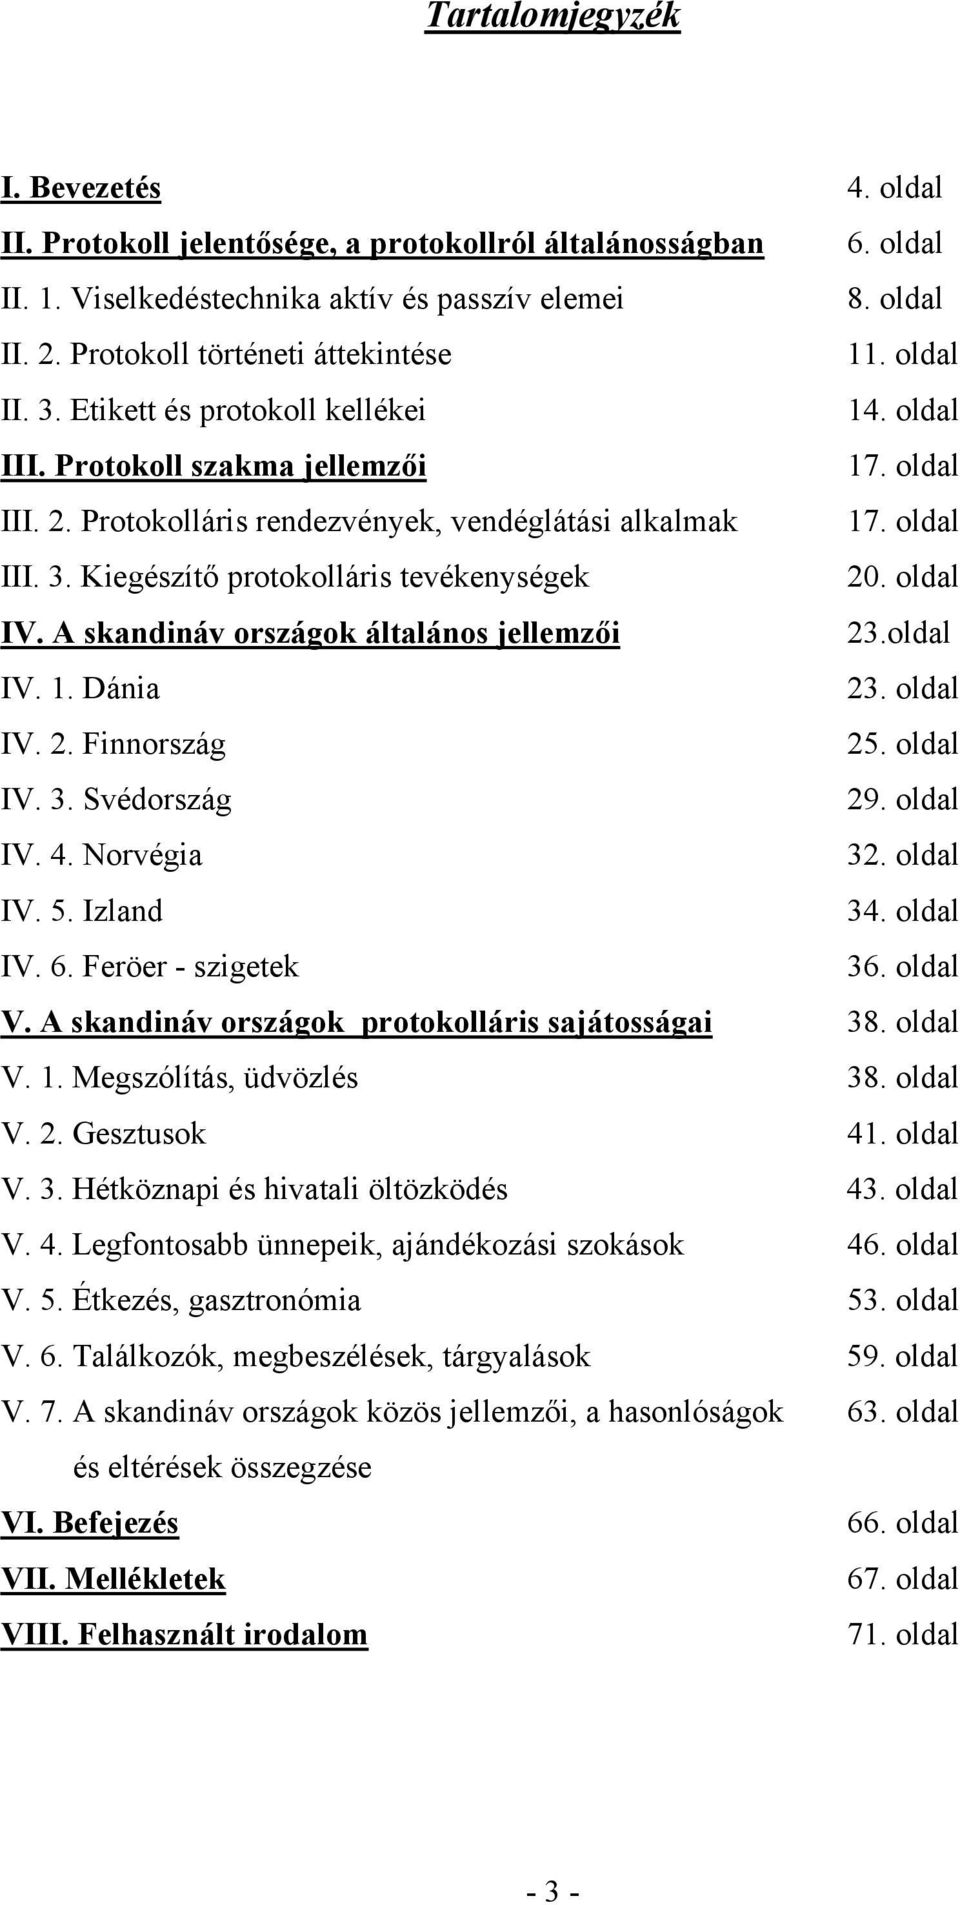 oldal III. 3. Kiegészítő protokolláris tevékenységek 20. oldal IV. A skandináv országok általános jellemzői 23.oldal IV. 1. Dánia 23. oldal IV. 2. Finnország 25. oldal IV. 3. Svédország 29. oldal IV. 4.